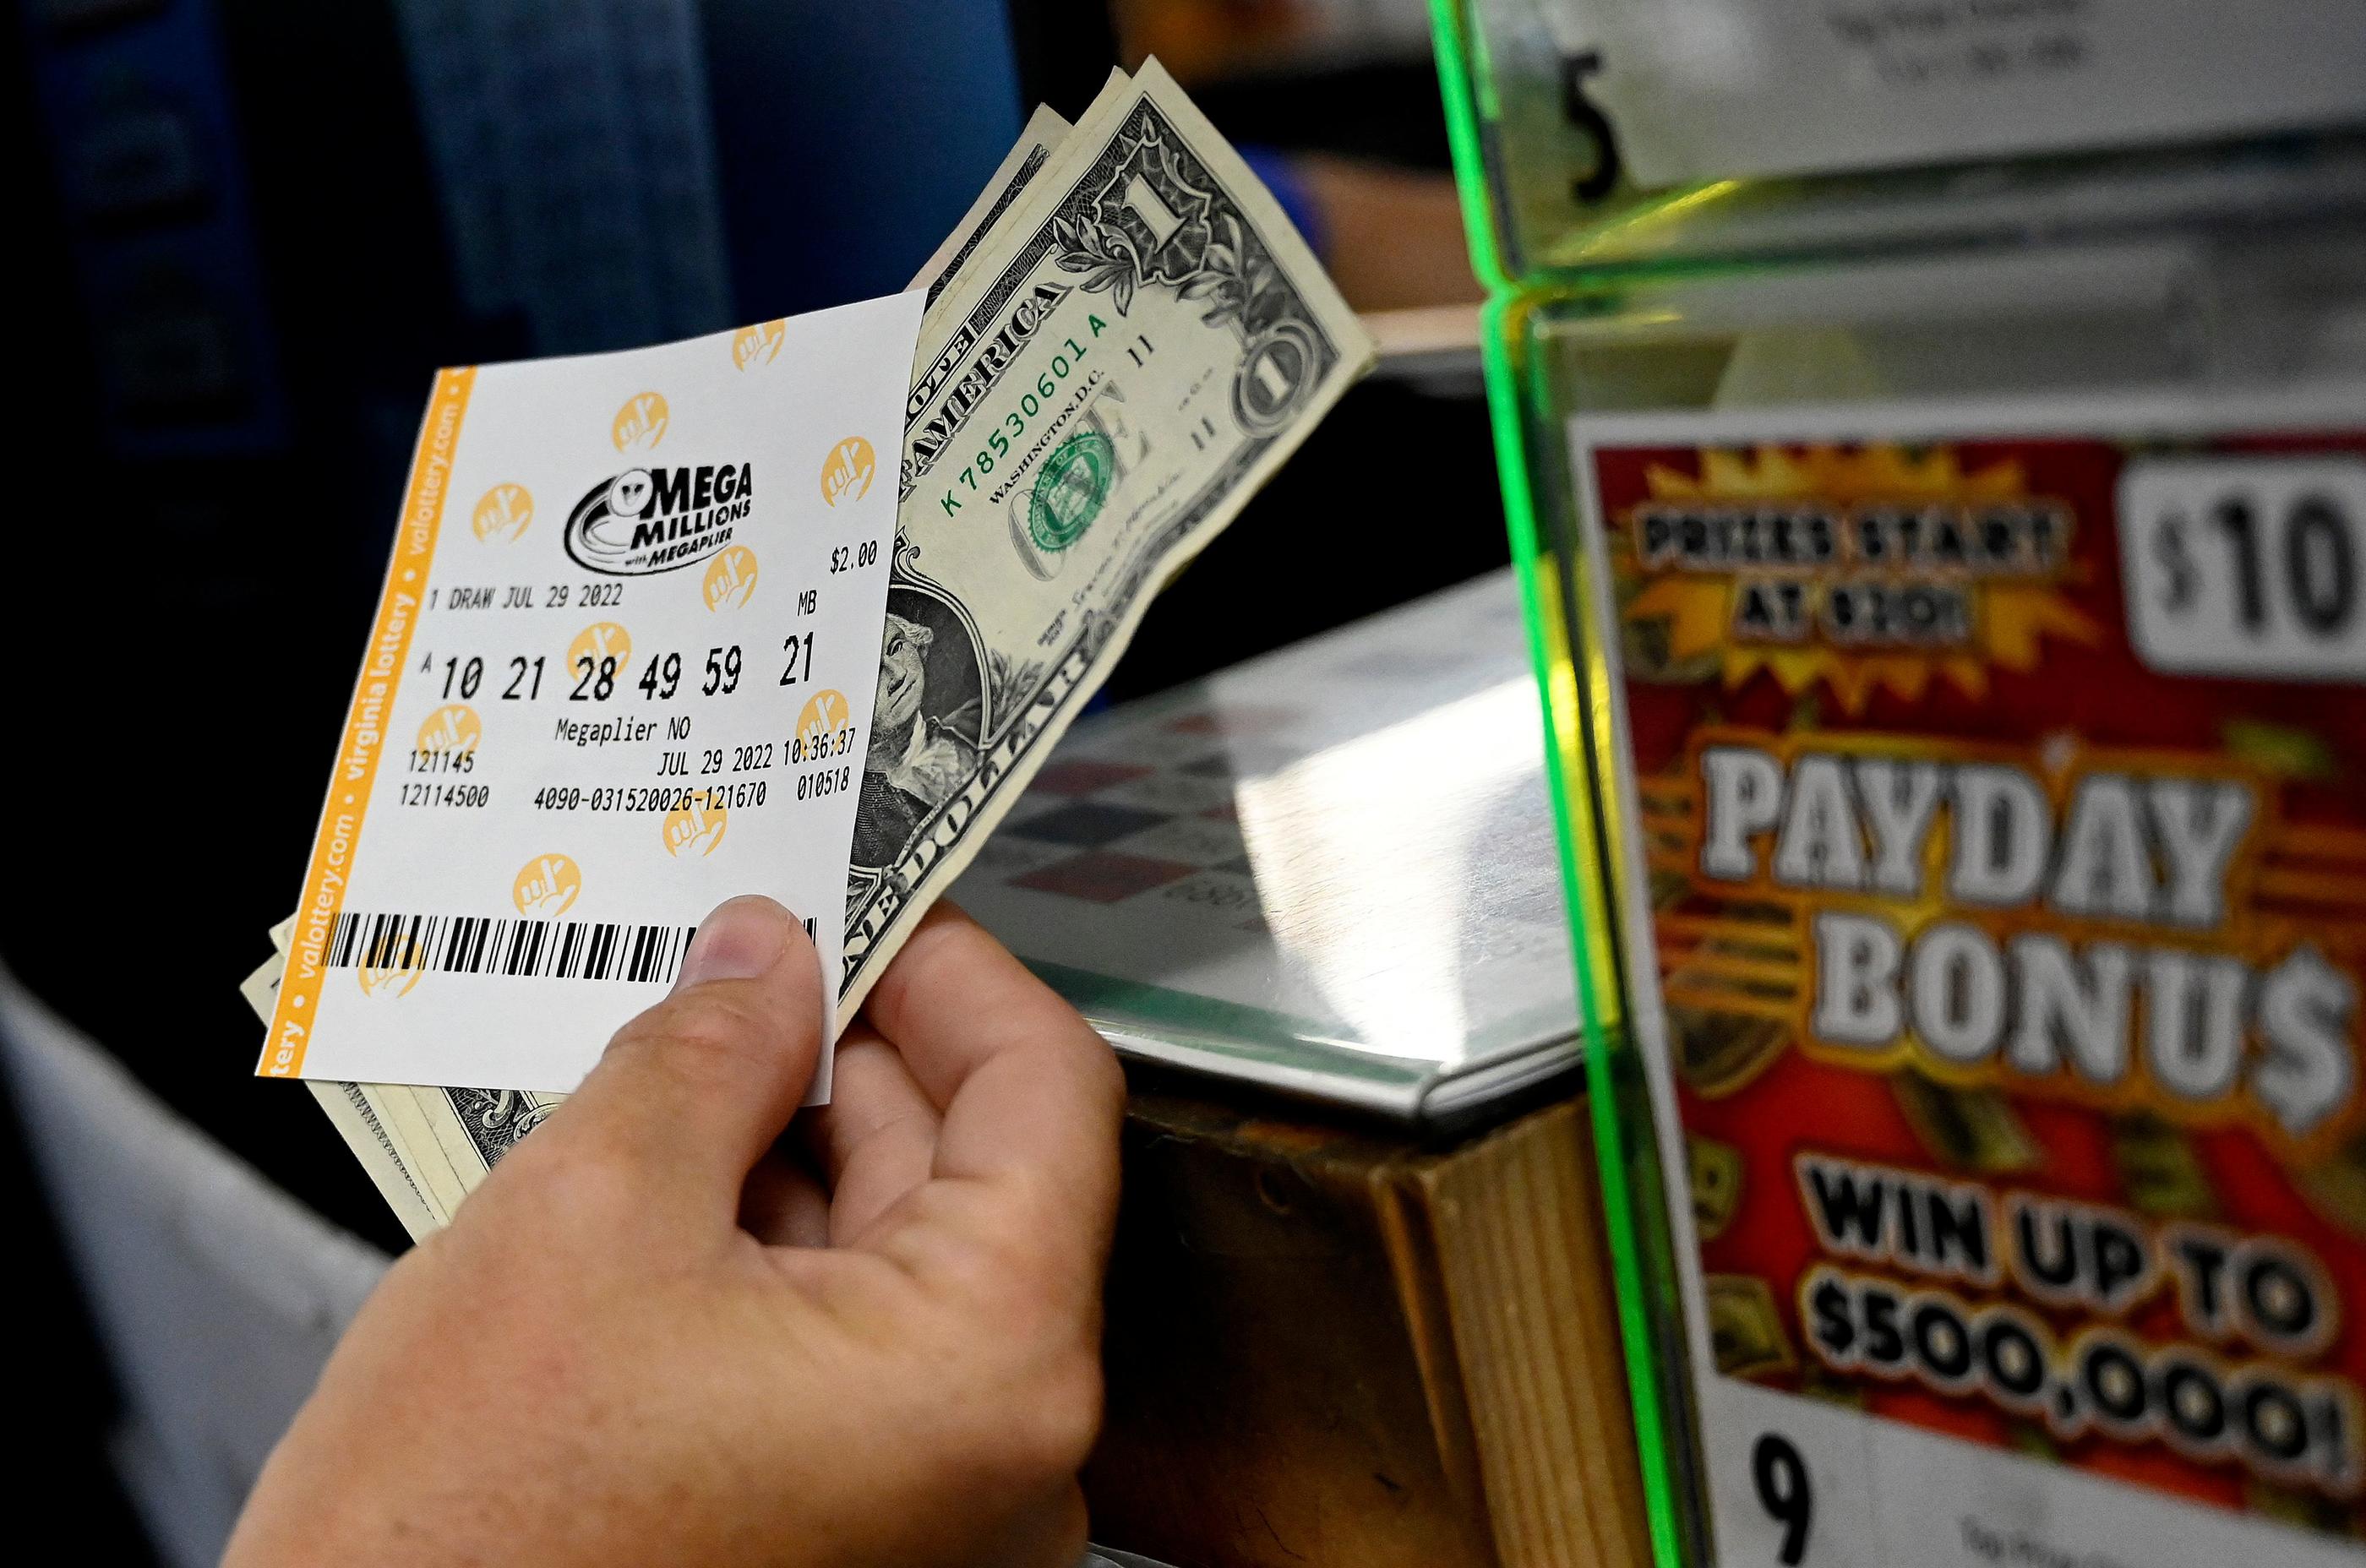 Deux billets gagnants de la loterie Mega Millions ont été validés dans la même station-service en Californie. AFP/OLIVIER DOULIERY